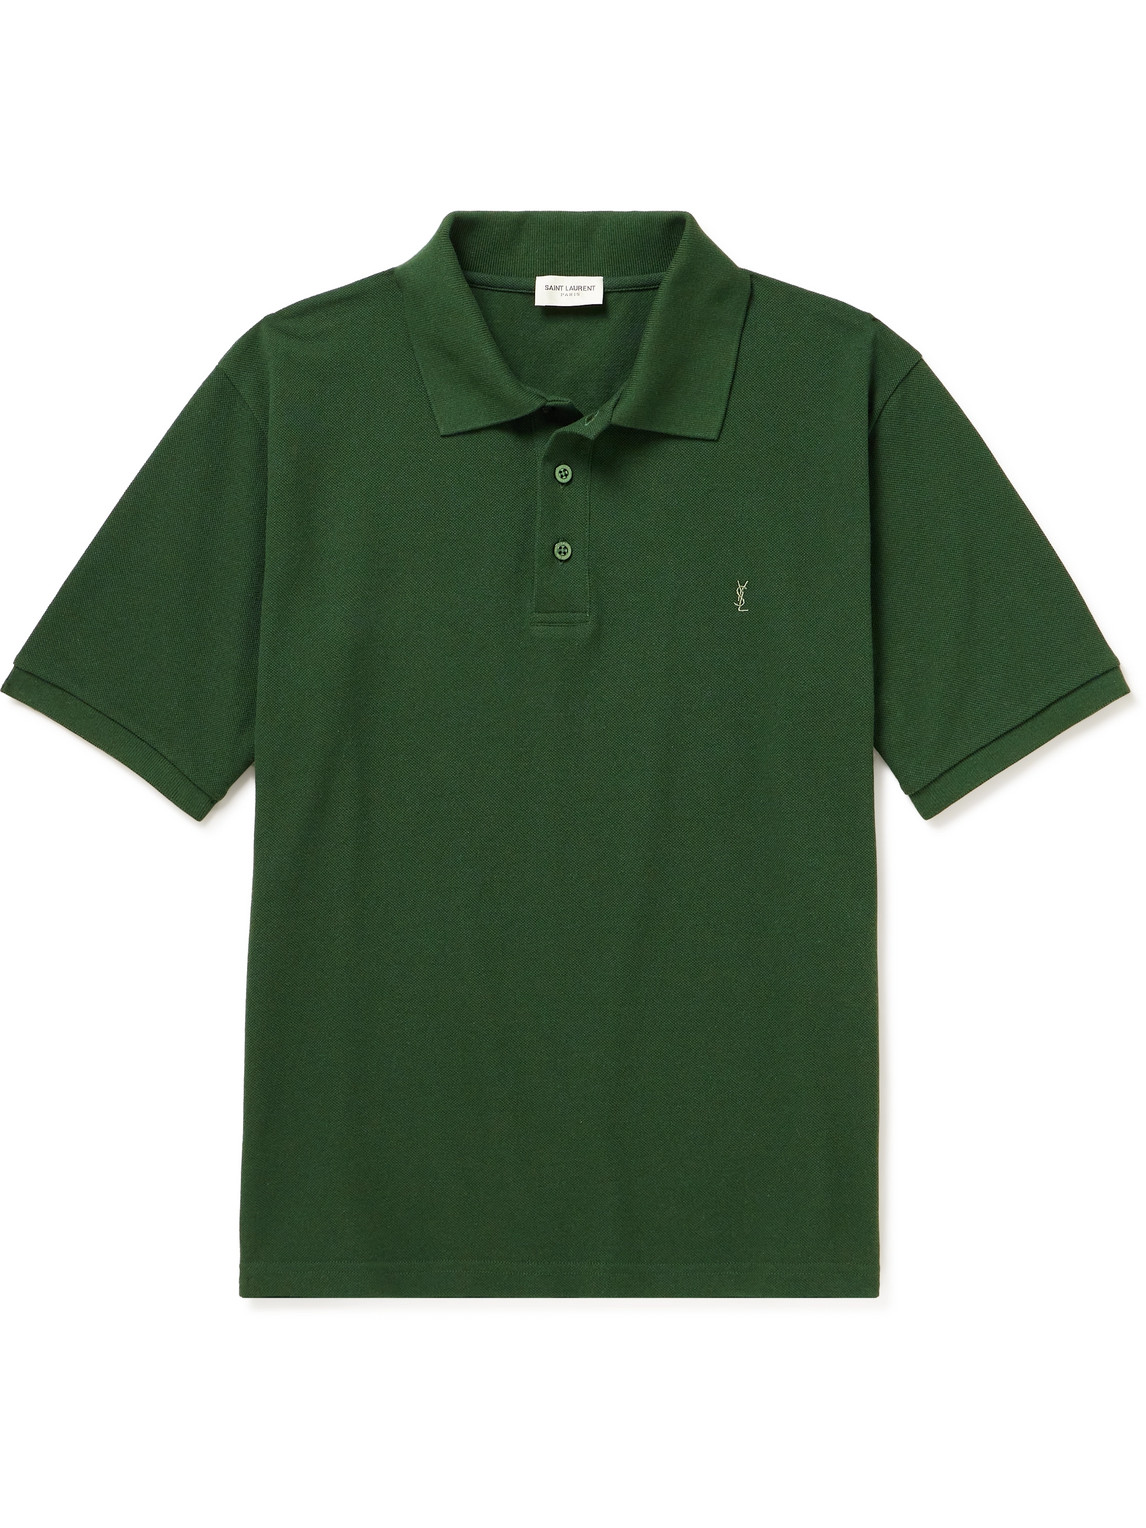 SAINT LAURENT - Logo-Embroidered Cotton-Blend Piqué Polo Shirt - Men - Green - L von SAINT LAURENT